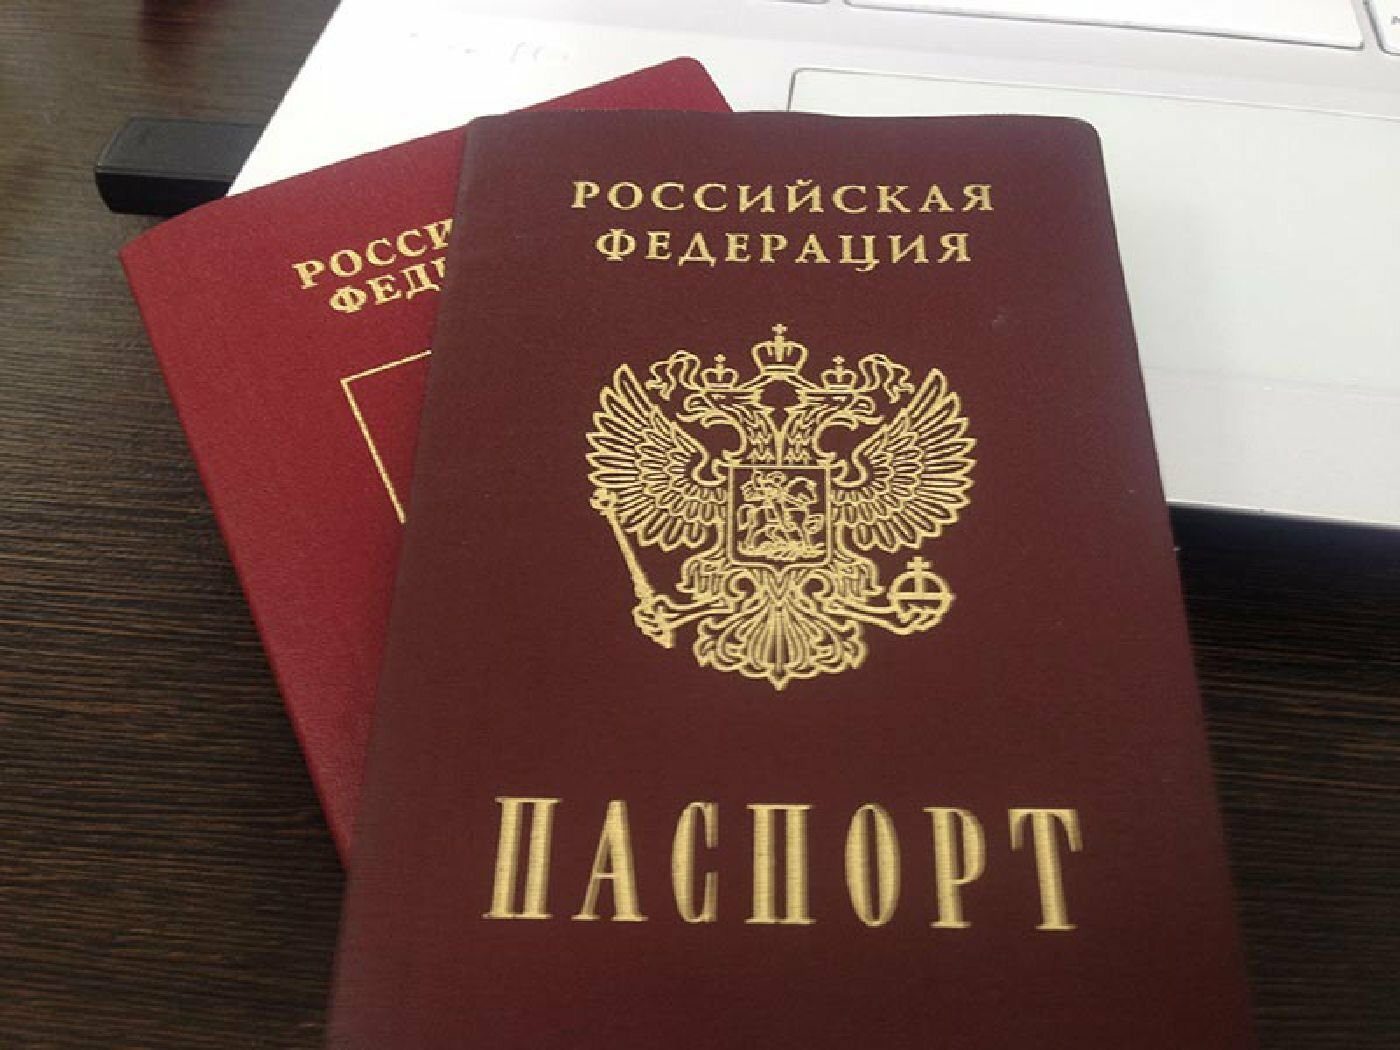 ДНР и ЛНР останавливают выезд граждан в РФ для получения российских паспортов: что известно